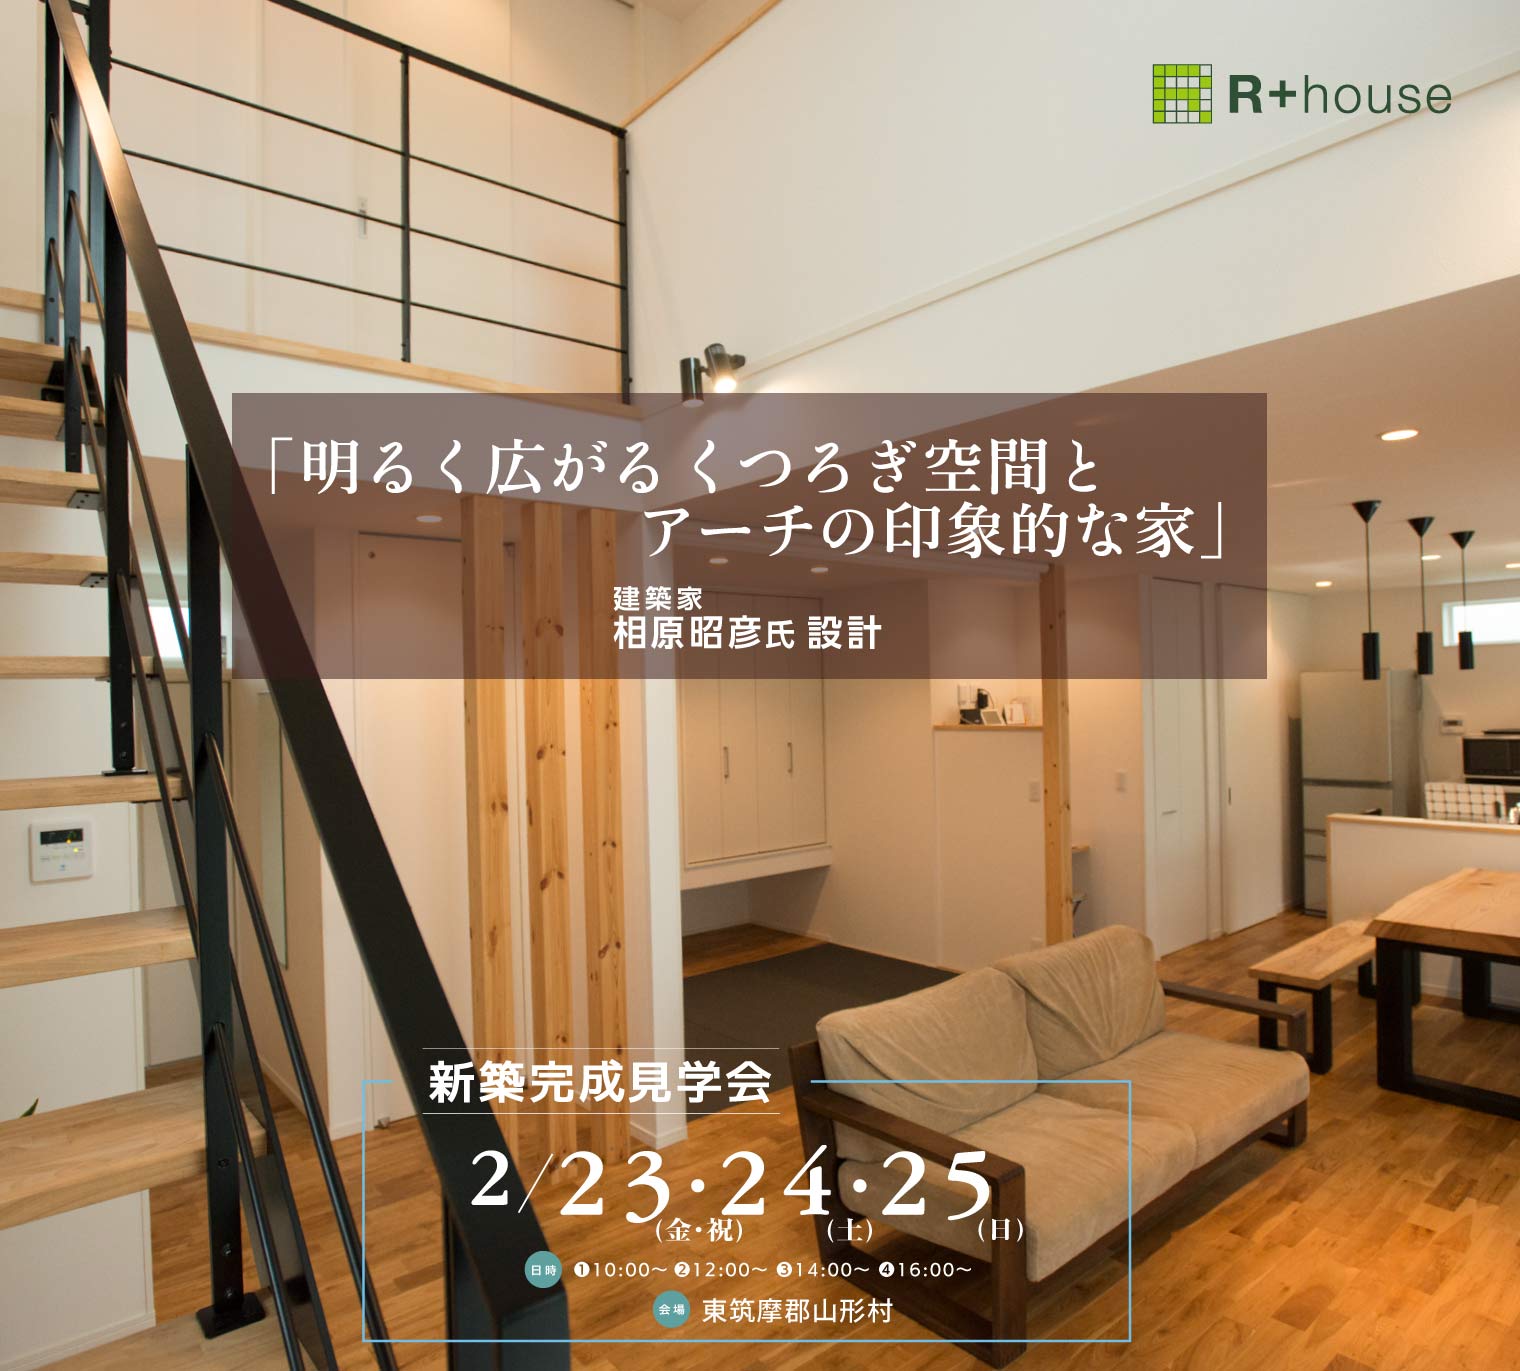 東筑摩郡山形村『明るく広がるくつろぎ空間とアーチの印象的な家』